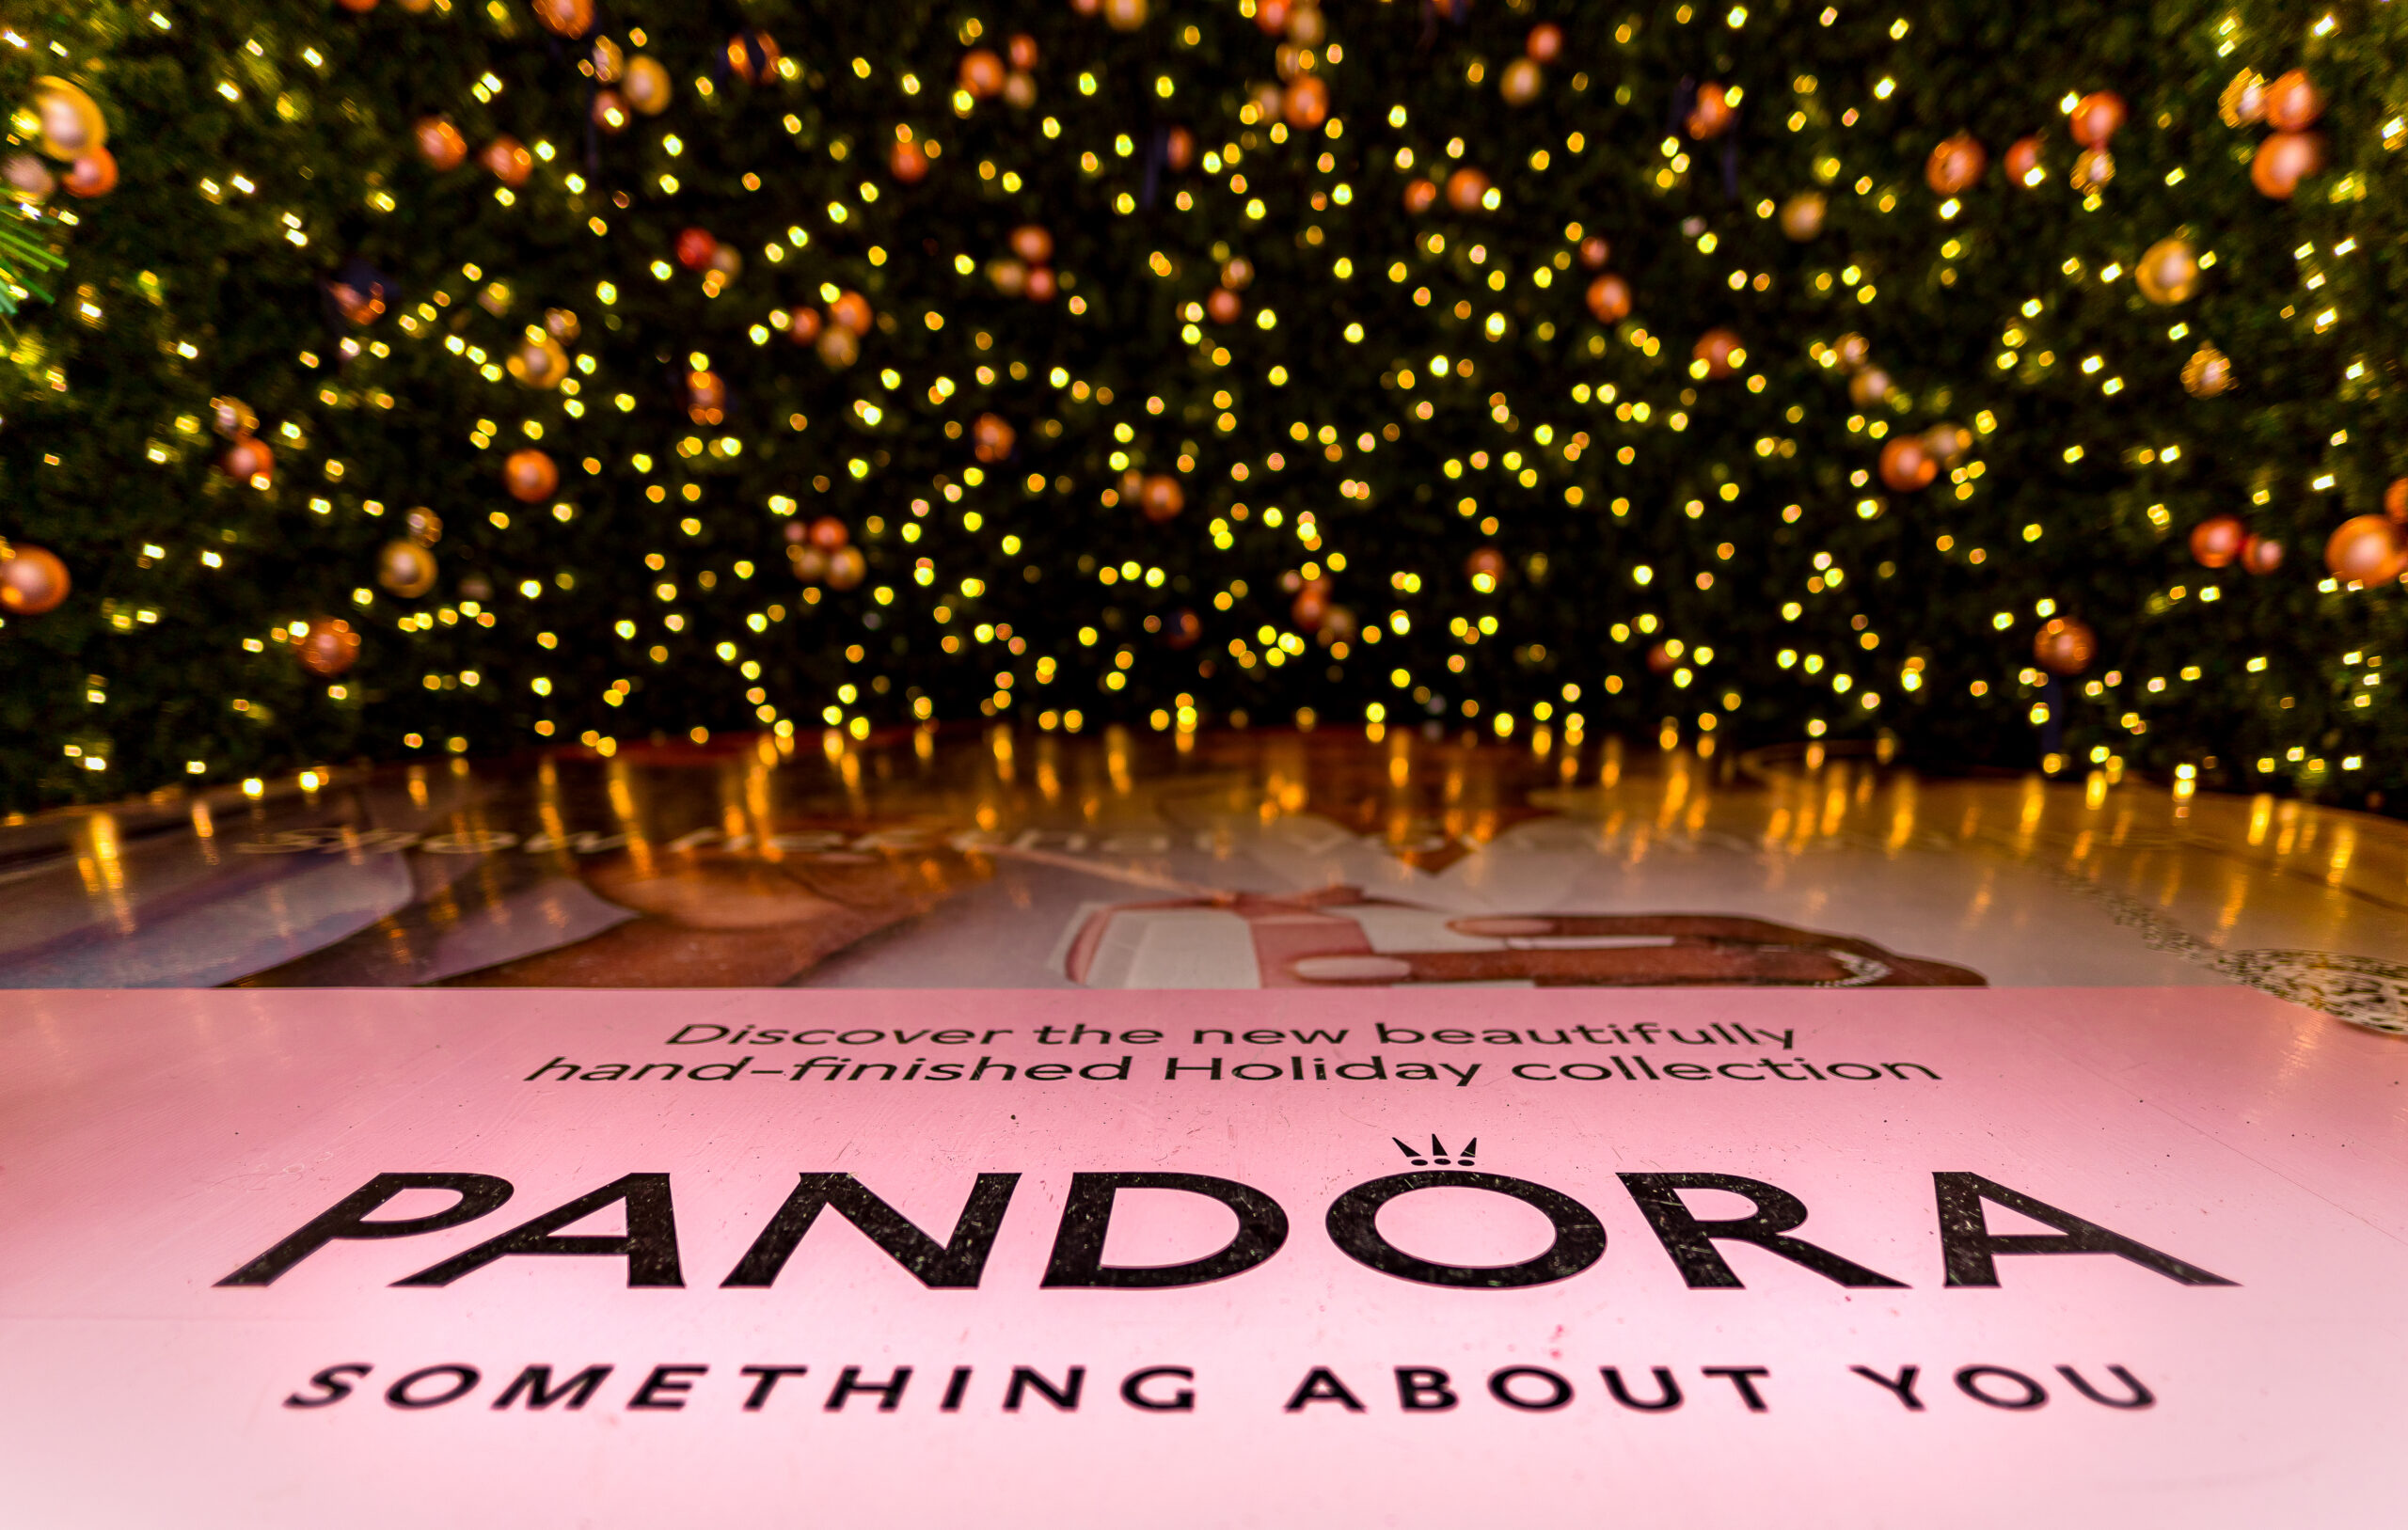 Pandora Holiday sponsorship